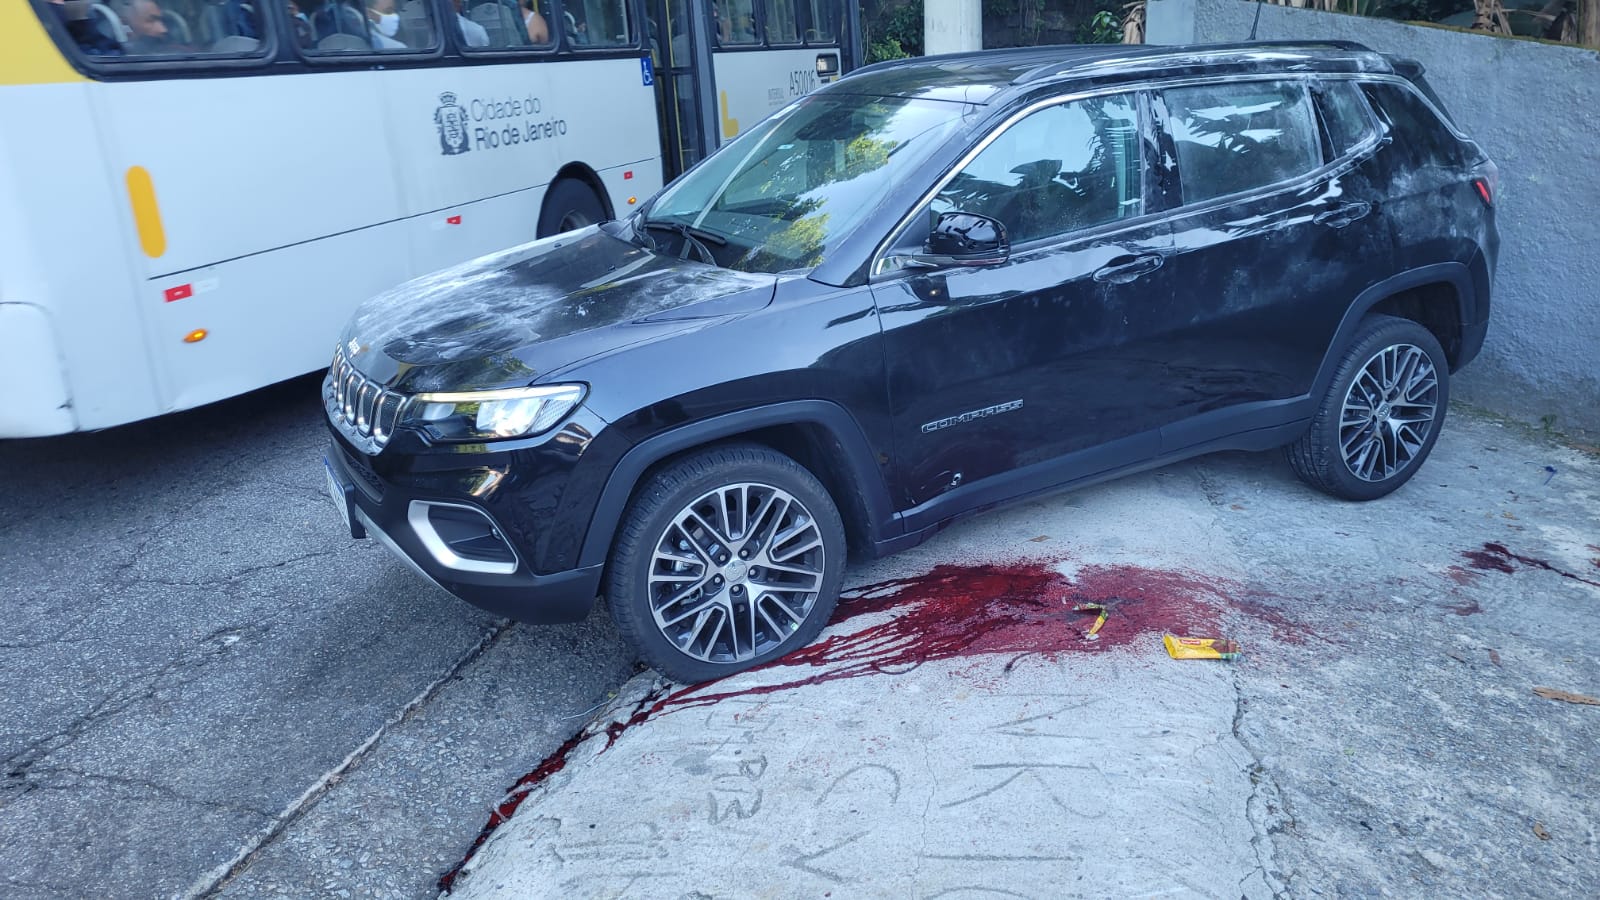 Mancha de sangue perto do carro onde o policial estava